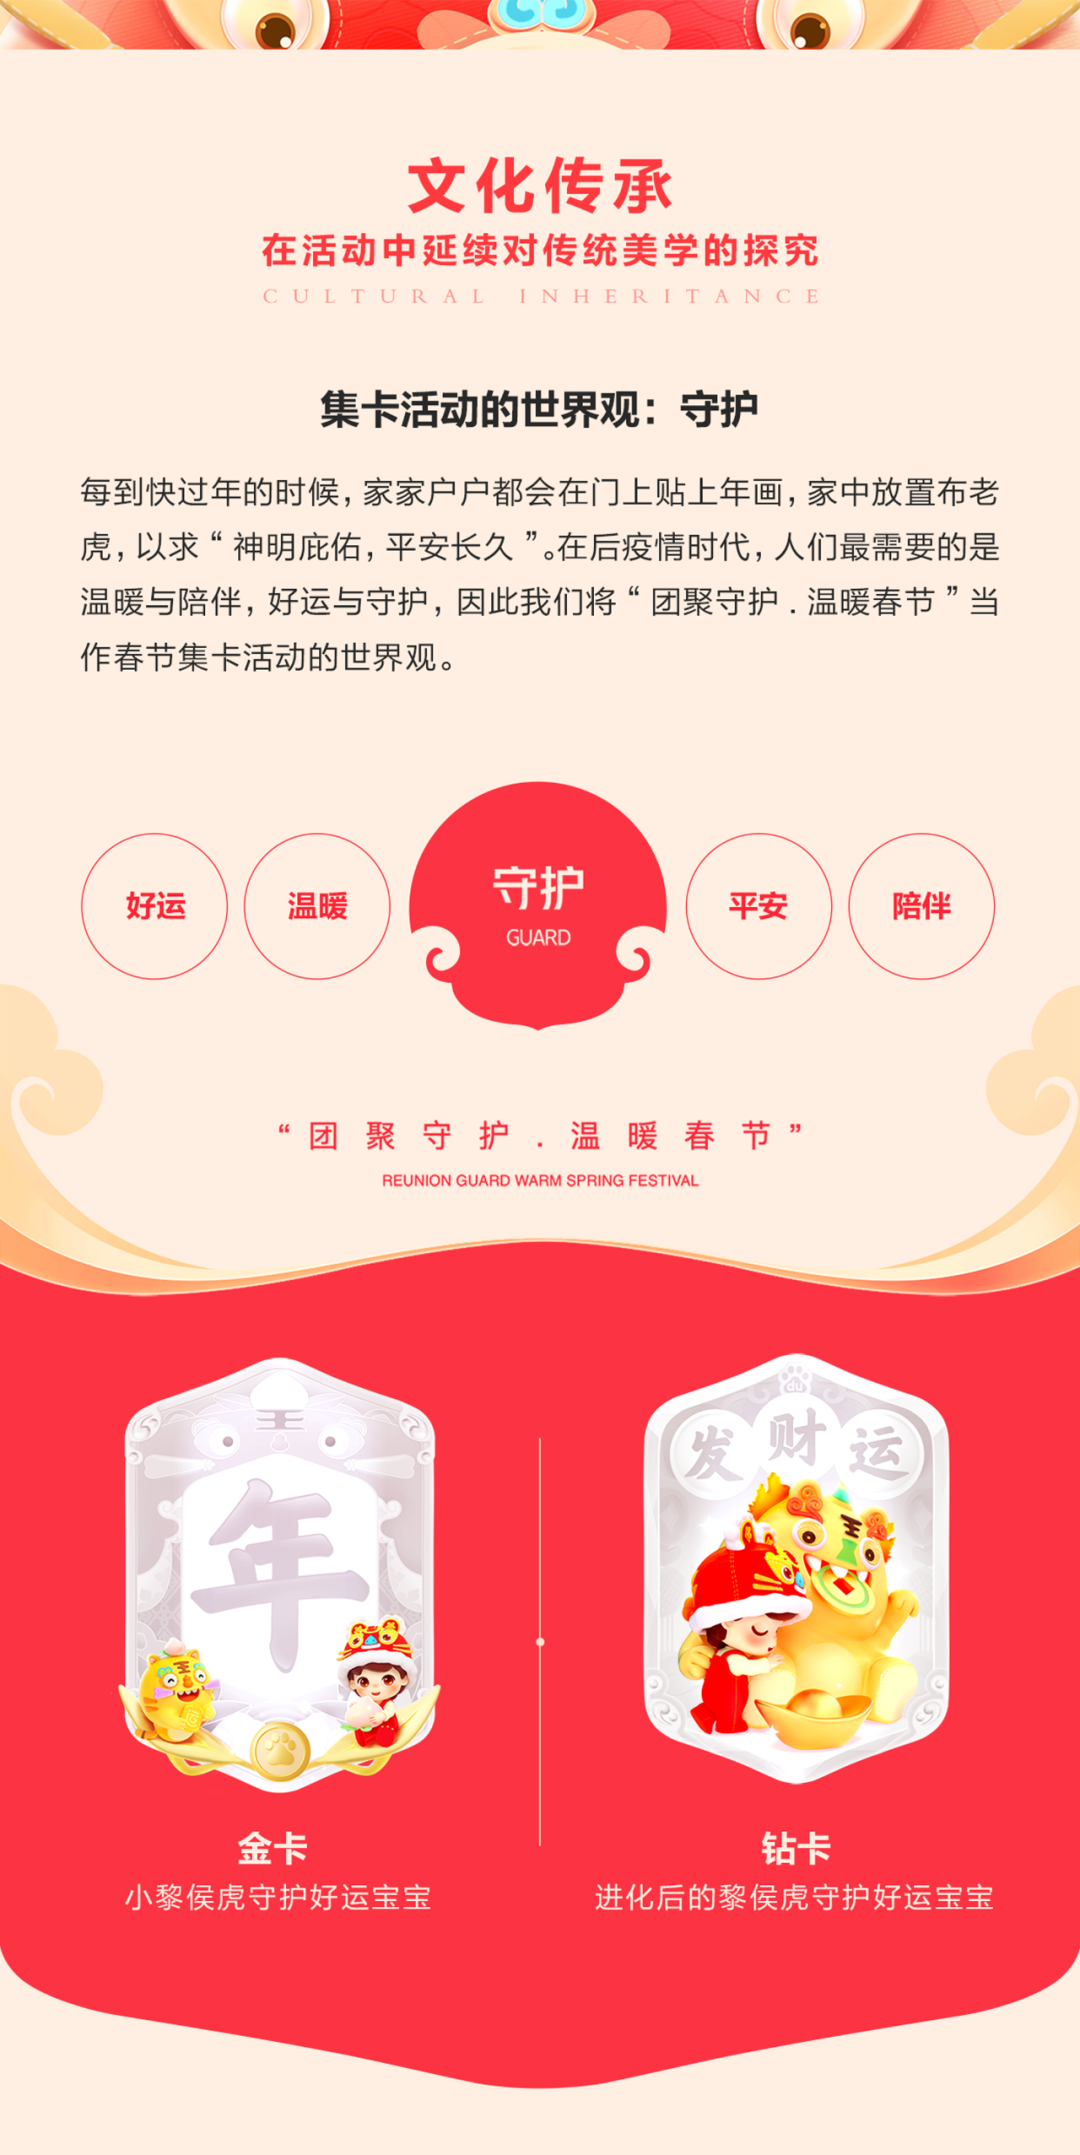 2022年好运中国年春节活动设计复盘 - 图11